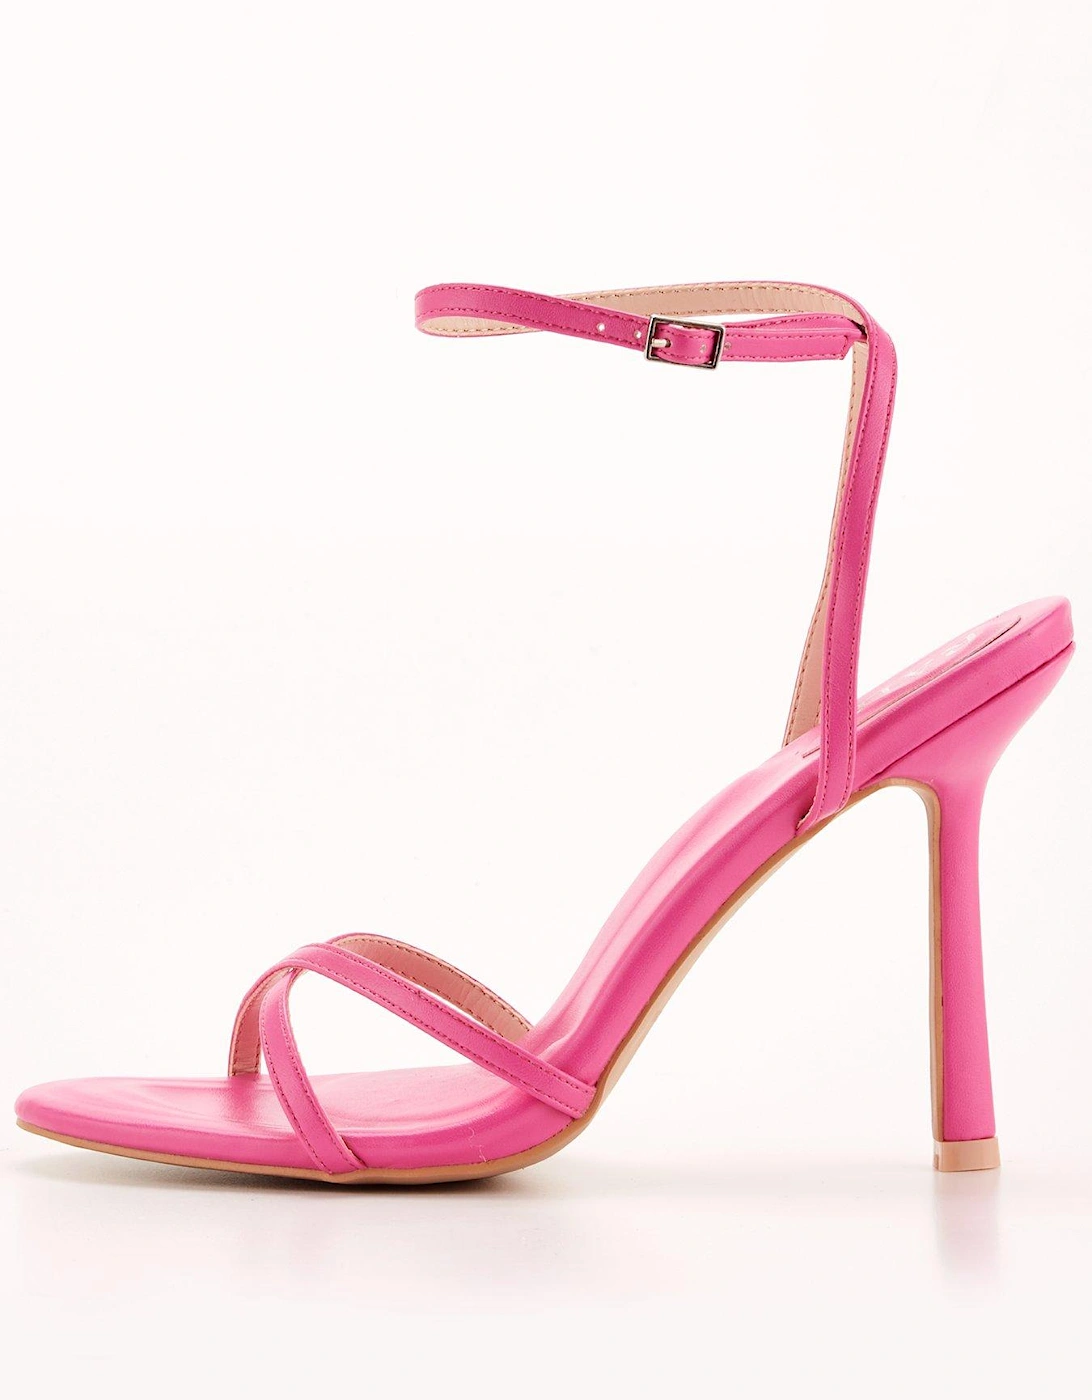 Sevilla Ankle Strap Heeled Sandal - Hot Pink, 7 of 6